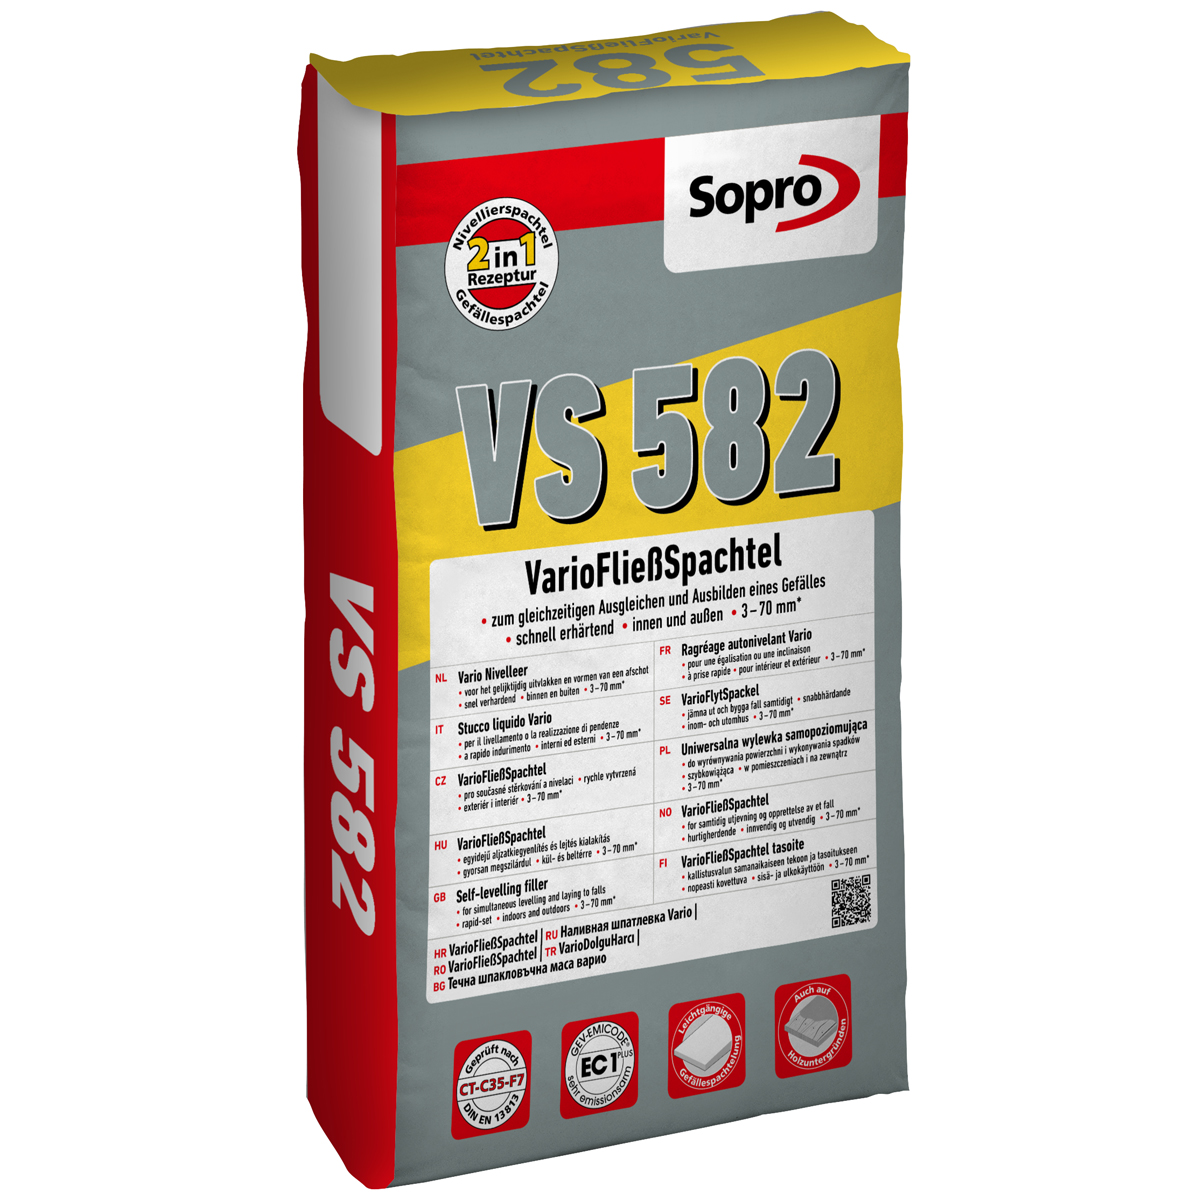 Sopro VarioFließspachtel VS 582